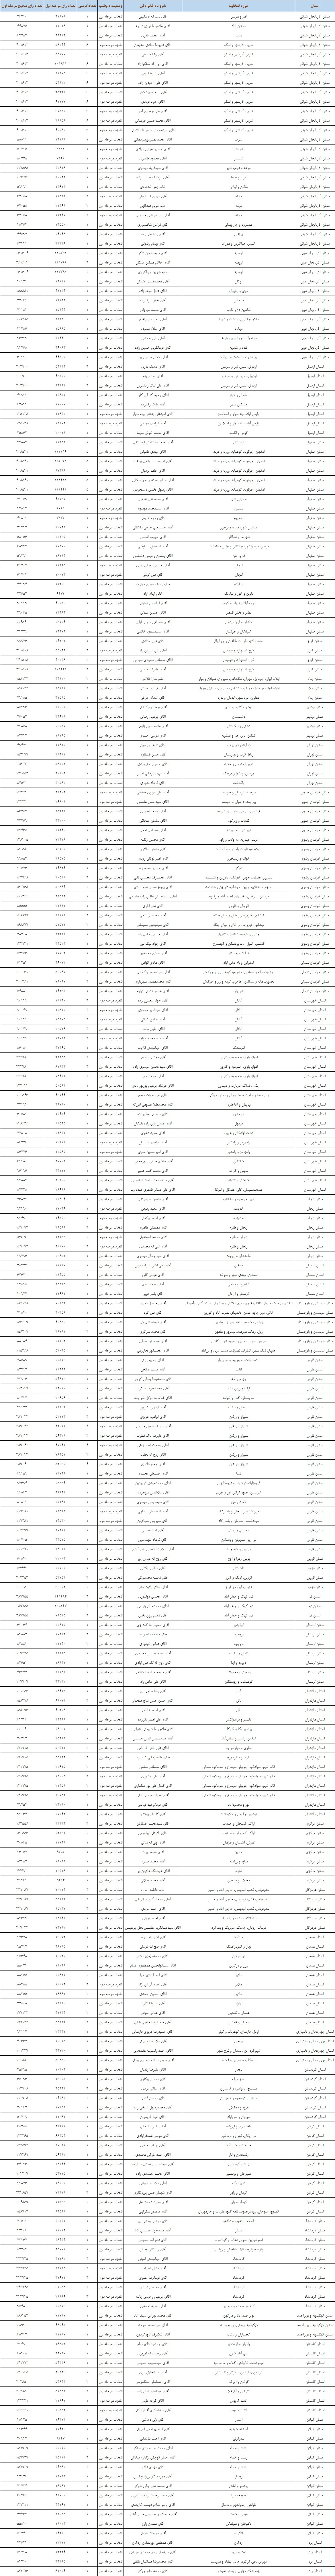 جدیدترین نتایج شمارش آرای انتخابات مجلس شورای اسلامی